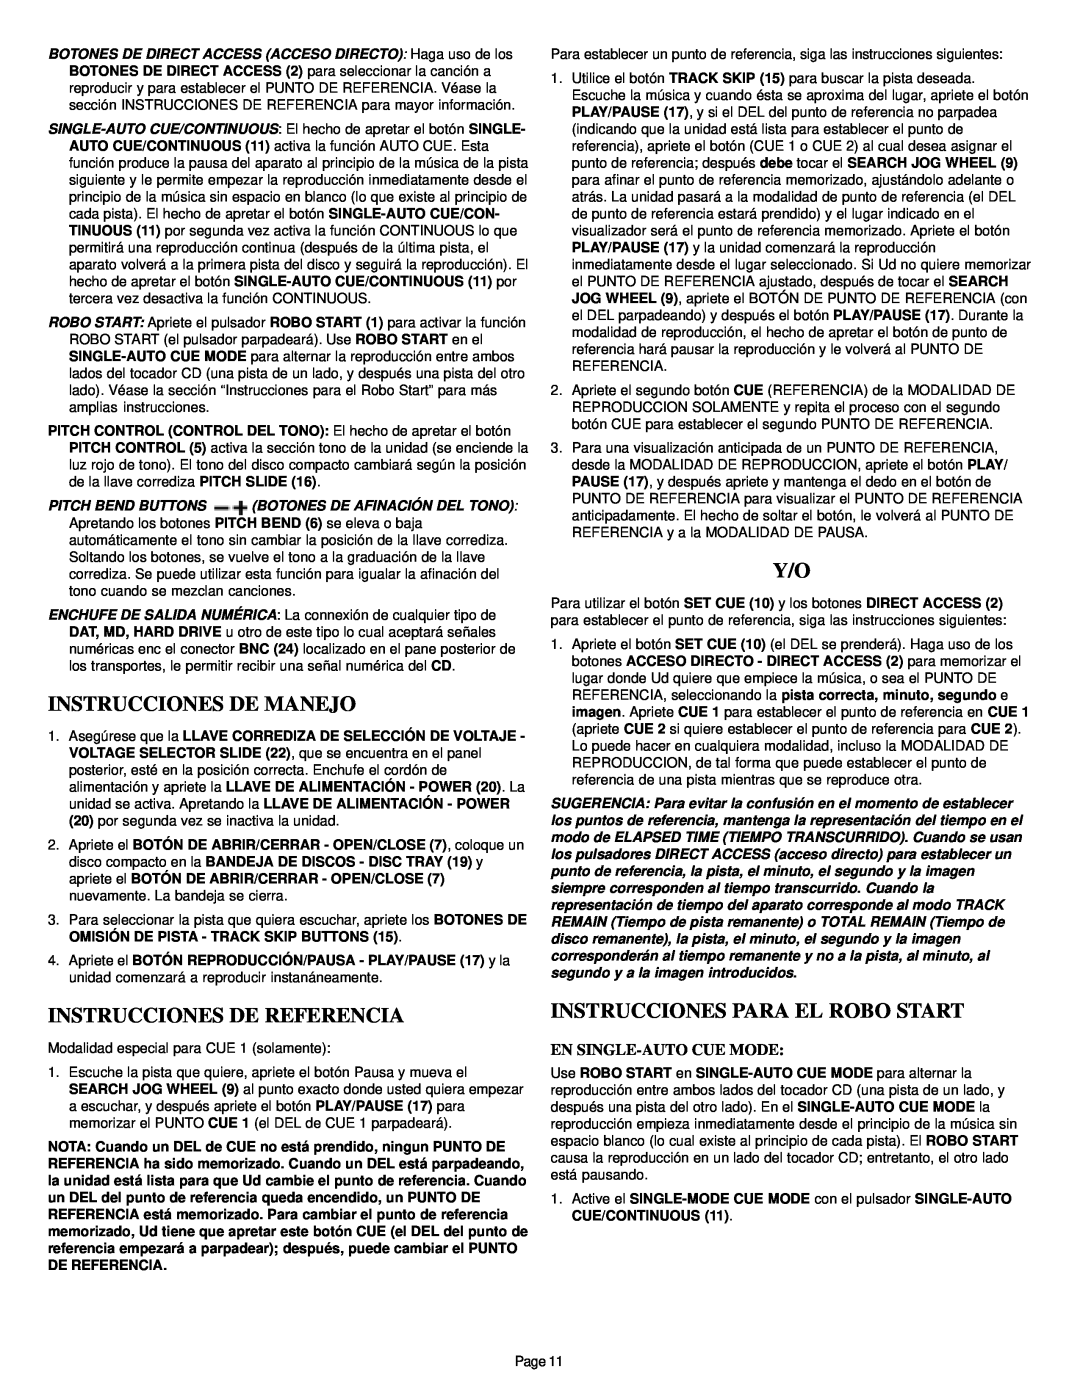 Gemini CD-340 manual Instrucciones De Manejo, Instrucciones De Referencia, Instrucciones Para El Robo Start 